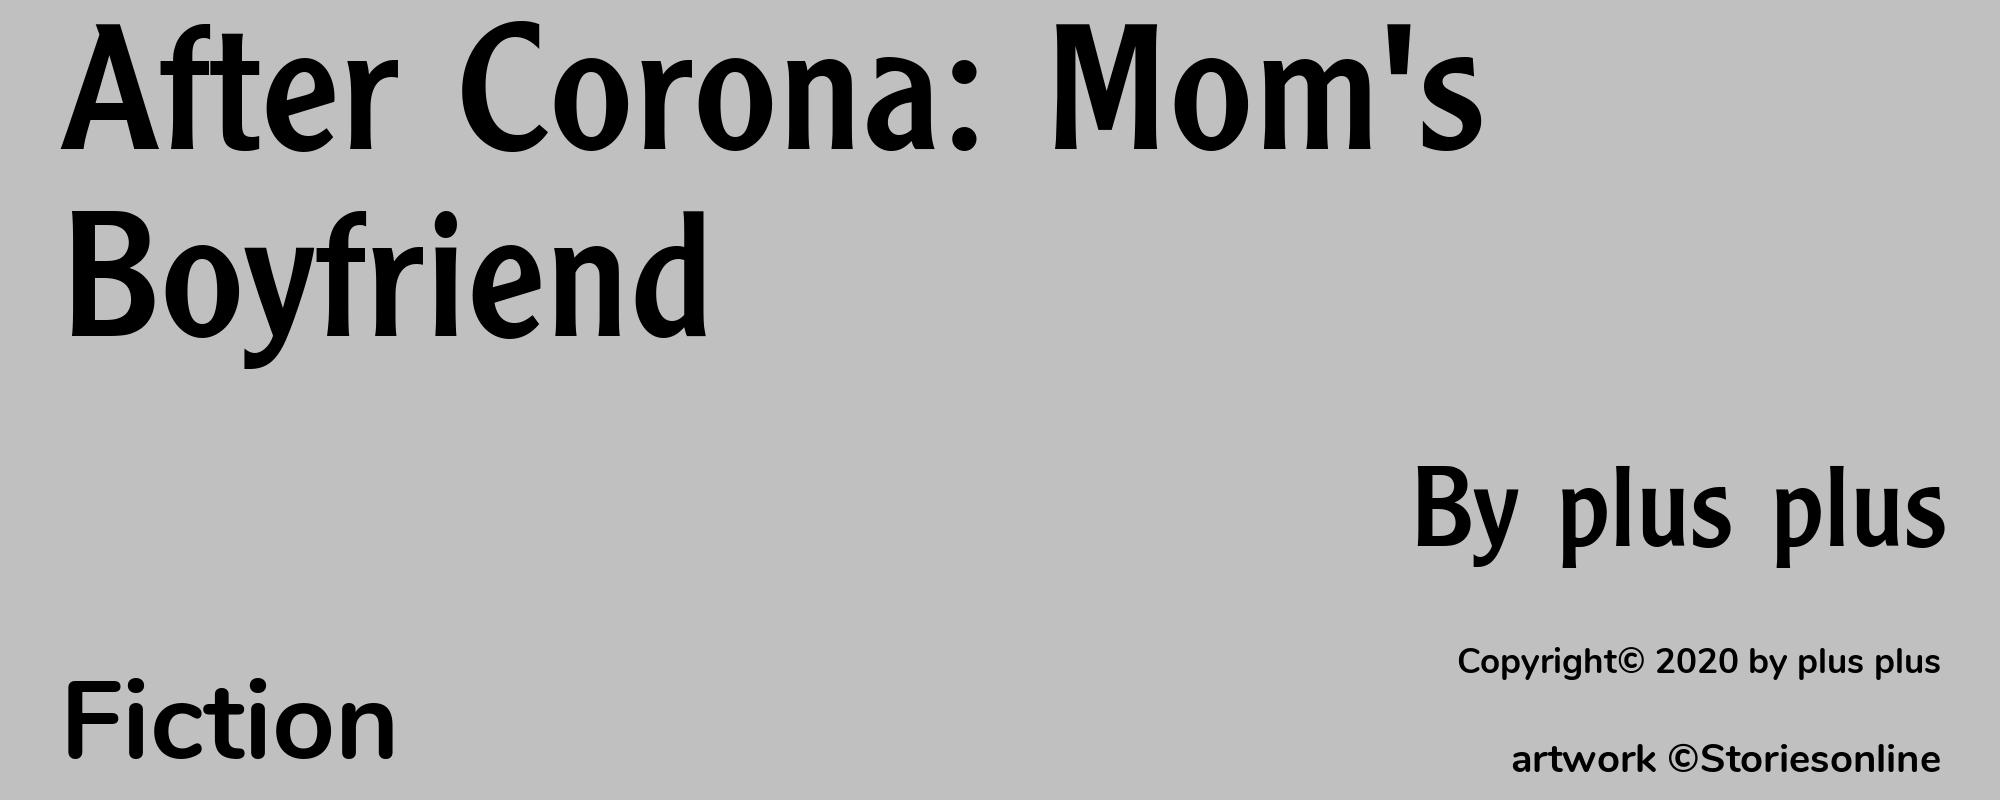 After Corona: Mom's Boyfriend - Cover